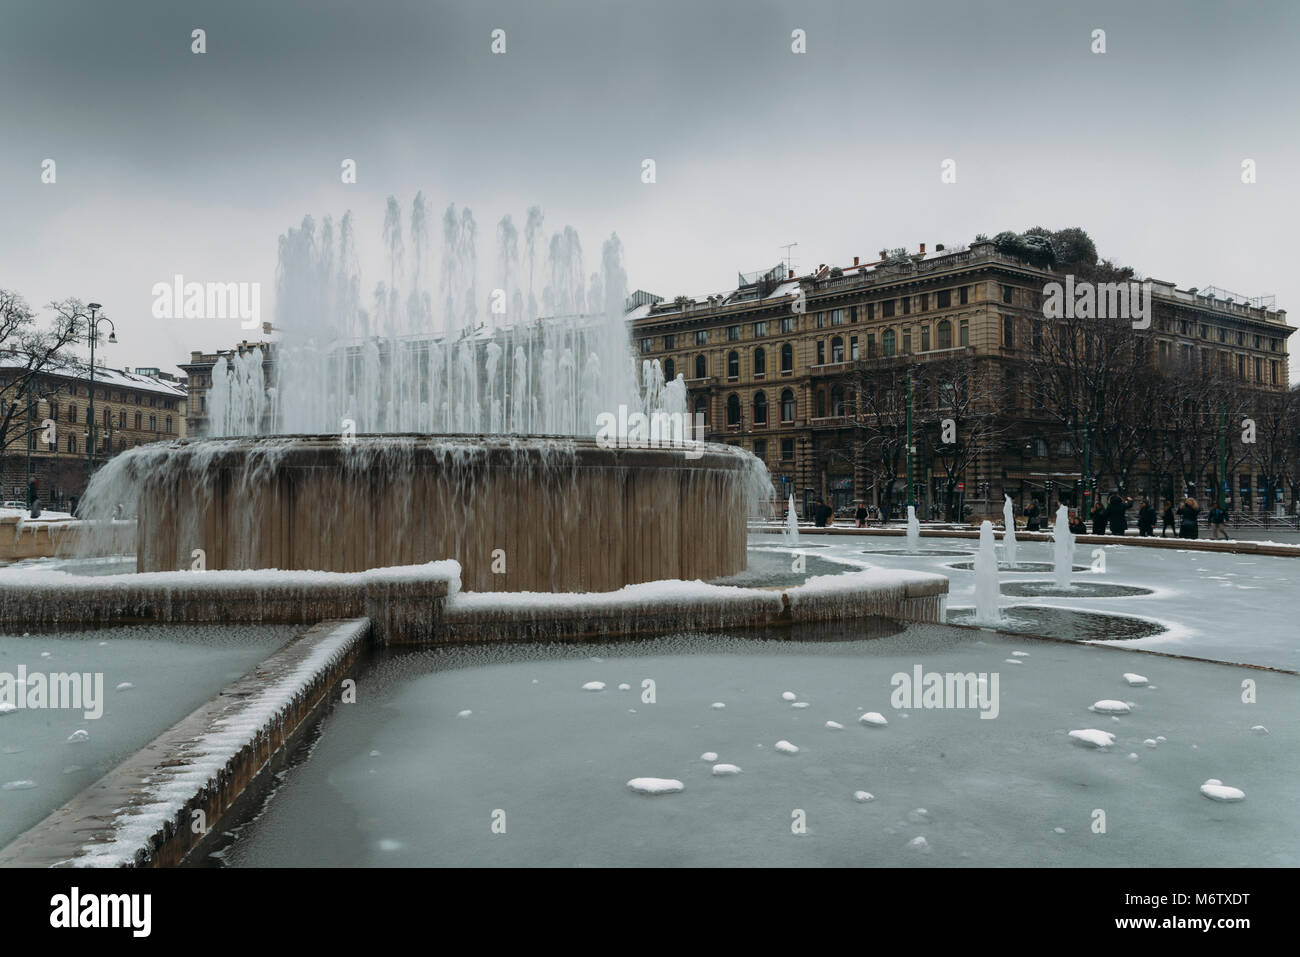 Fountain in front of Sforza Castle, Italian: Castello Sforzesco, Stock Photo